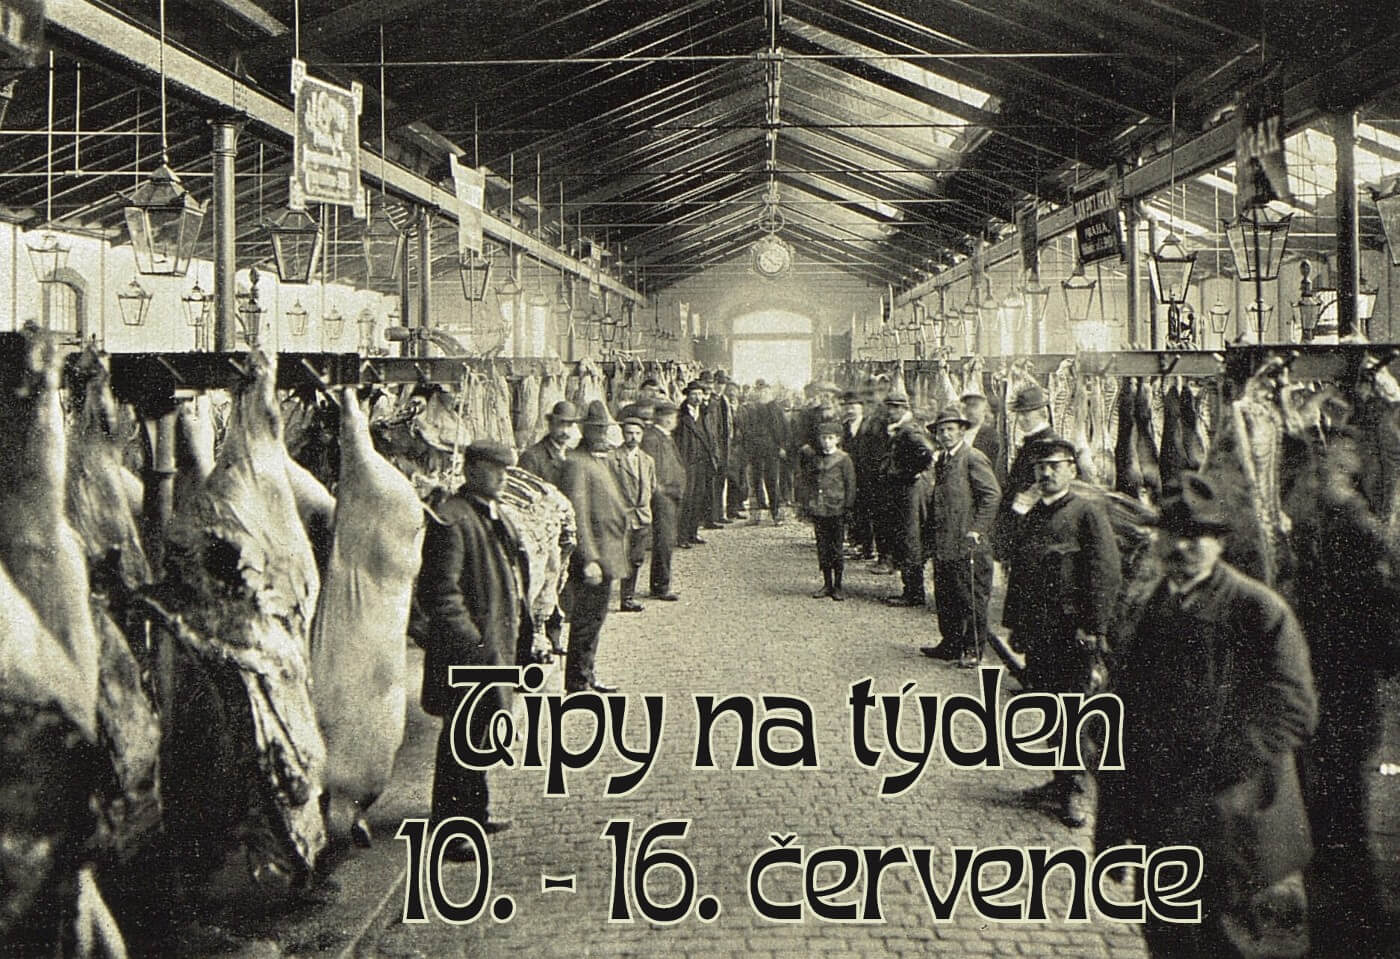 Komentovaná procházka bývalými jatky vás čeká v Holešovické tržnici - info v textu / Foto Deport a Panzer, 1905